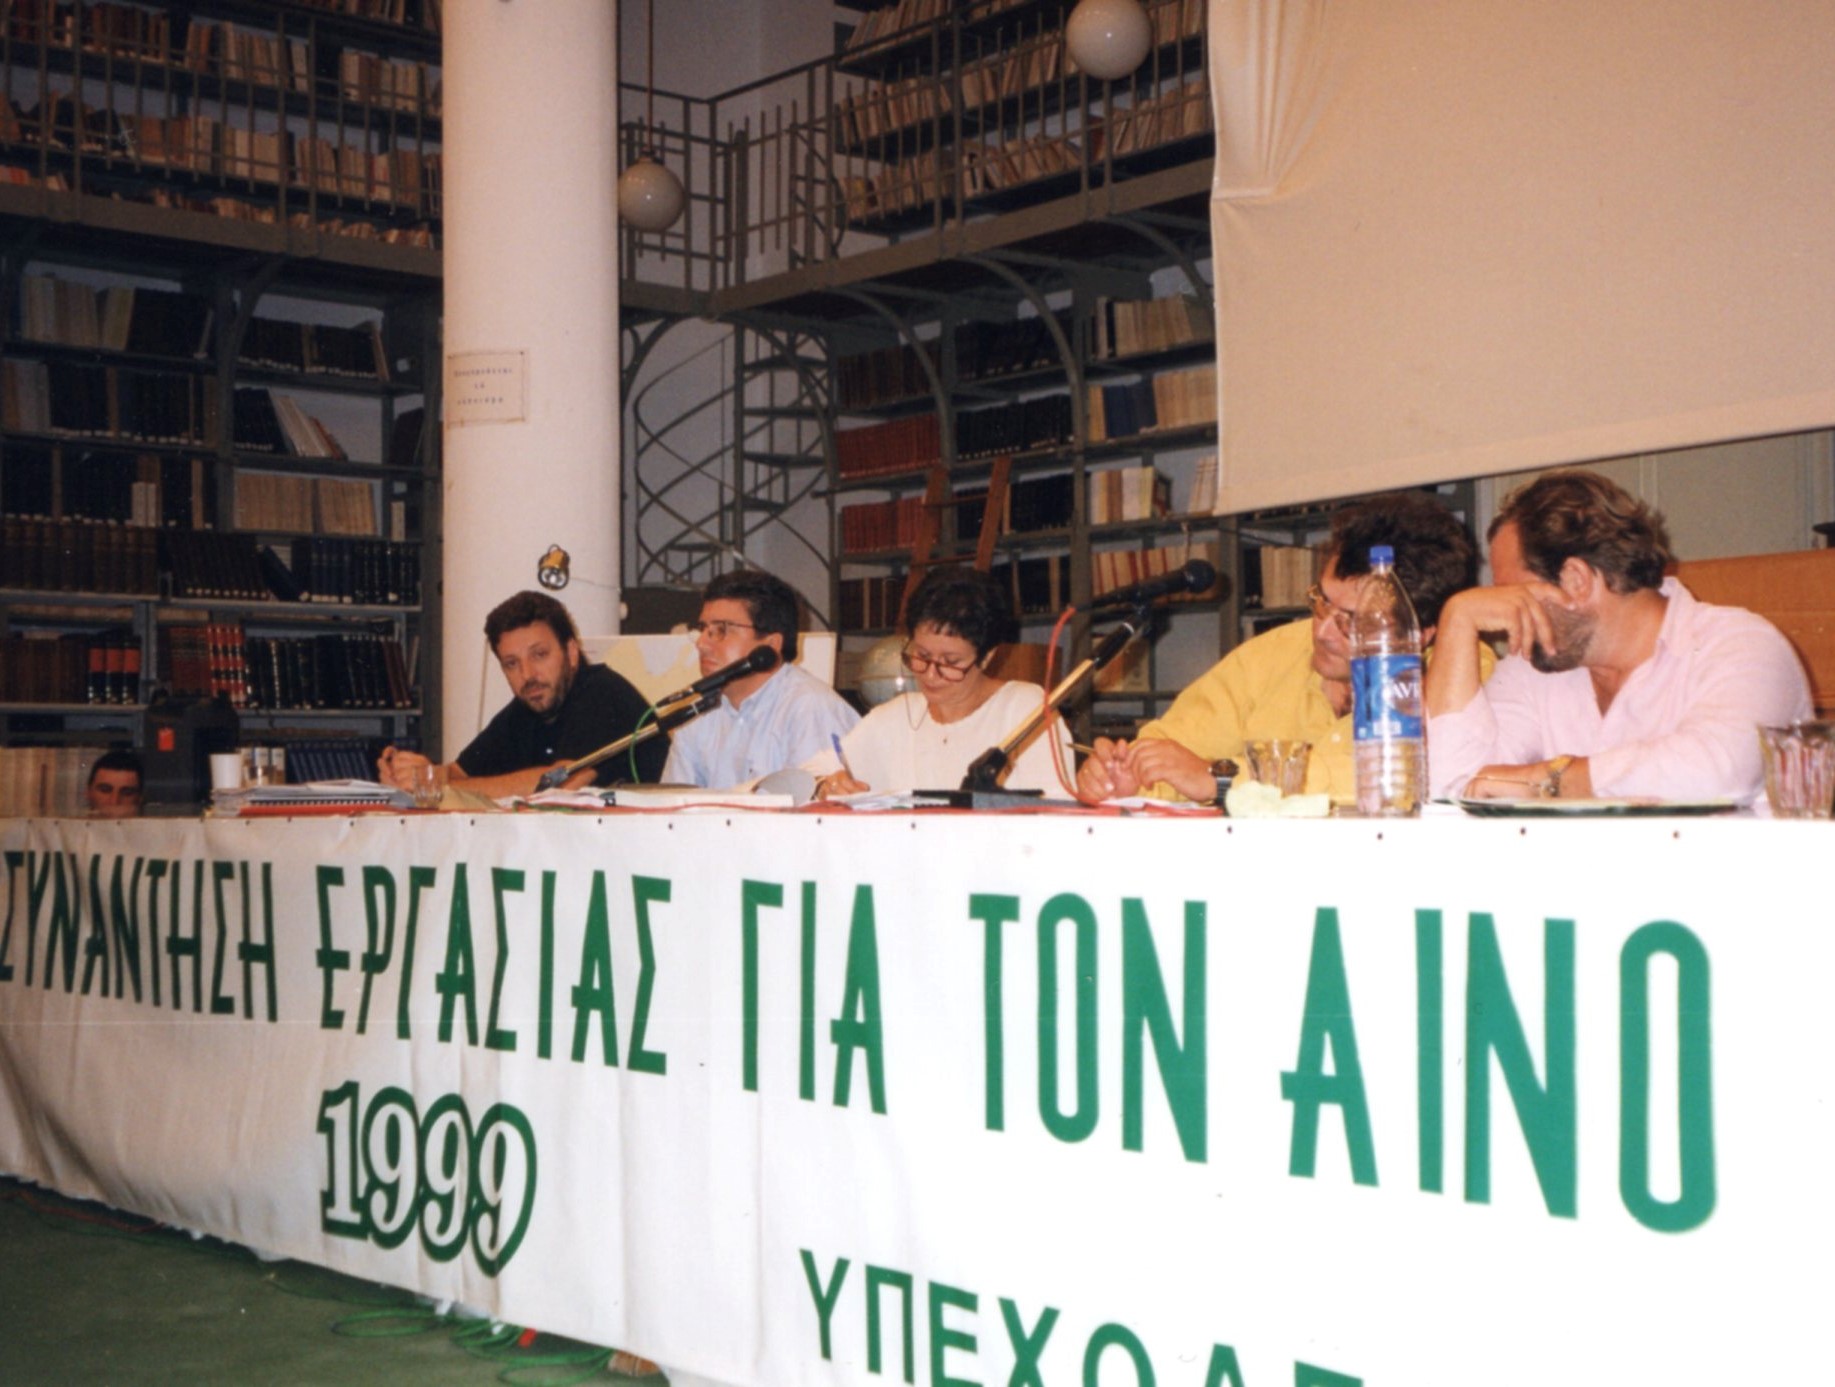 Μαρία Αντωνελου Συνάντηση για τον Αινο. Αργοστολι 1999